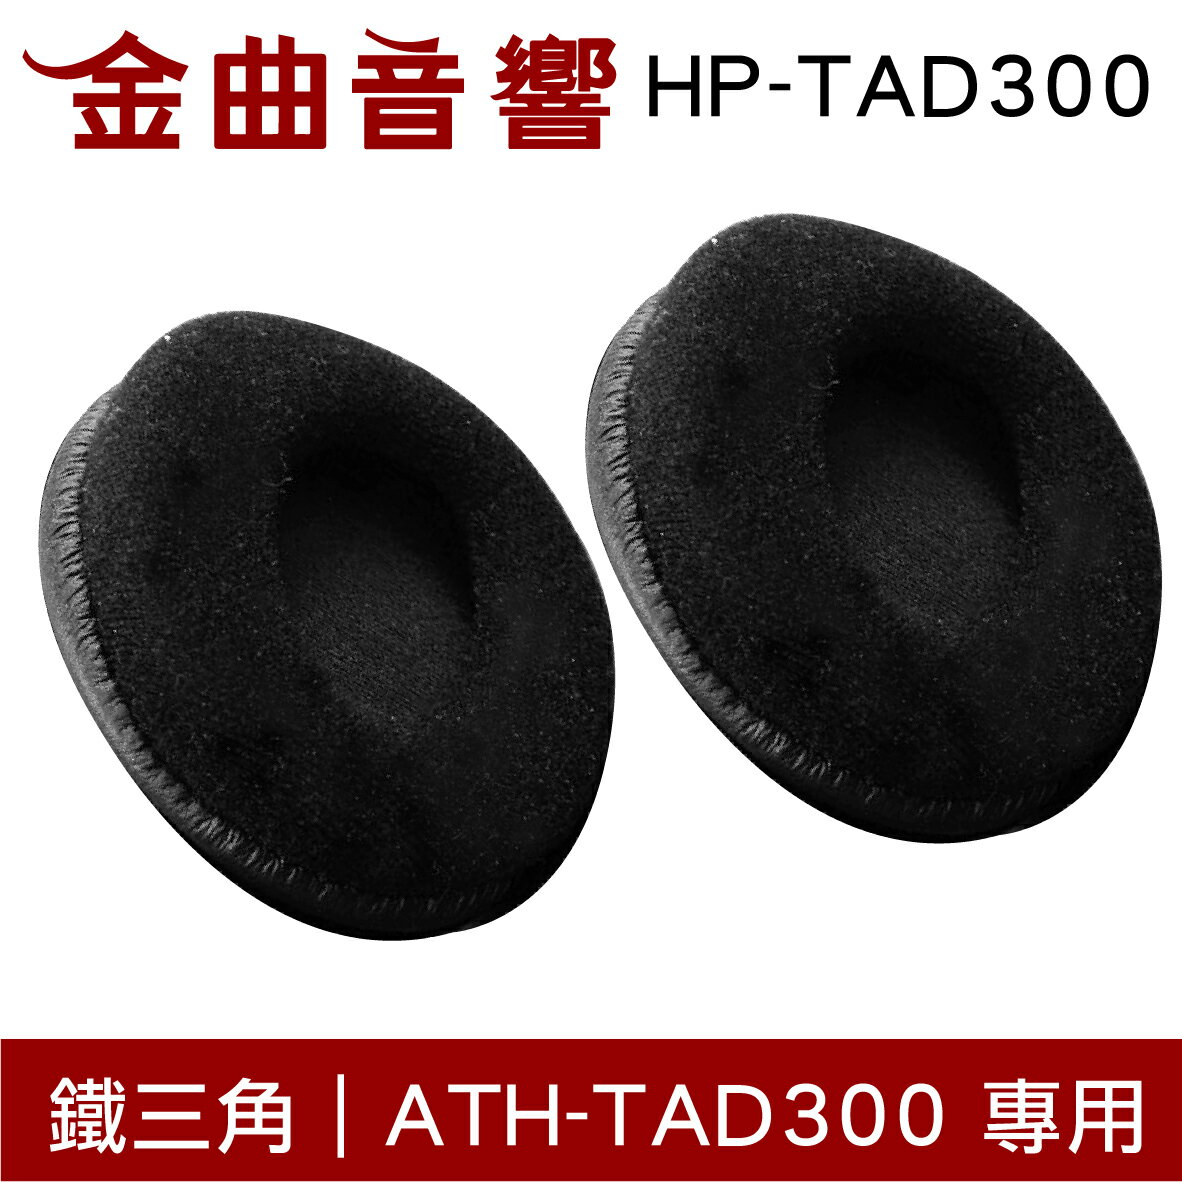 鐵三角 HP-TAD300 替換耳罩 一對 ATH-TAD300 專用 | 金曲音響